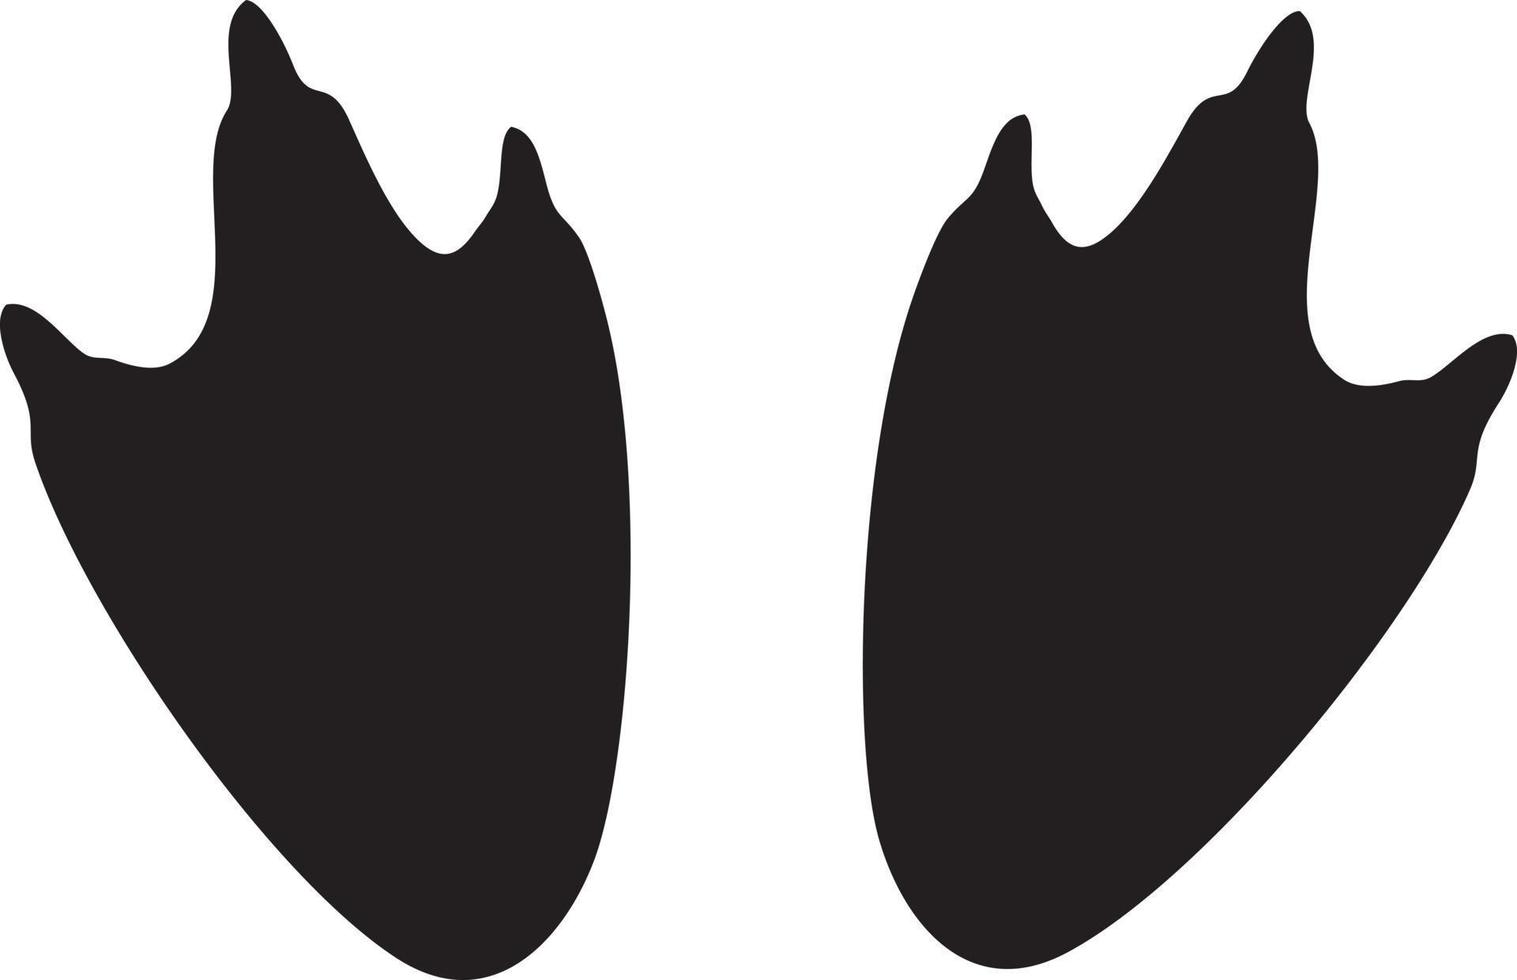 pieds de pingouin illustration vectorielle noir et blanc vecteur